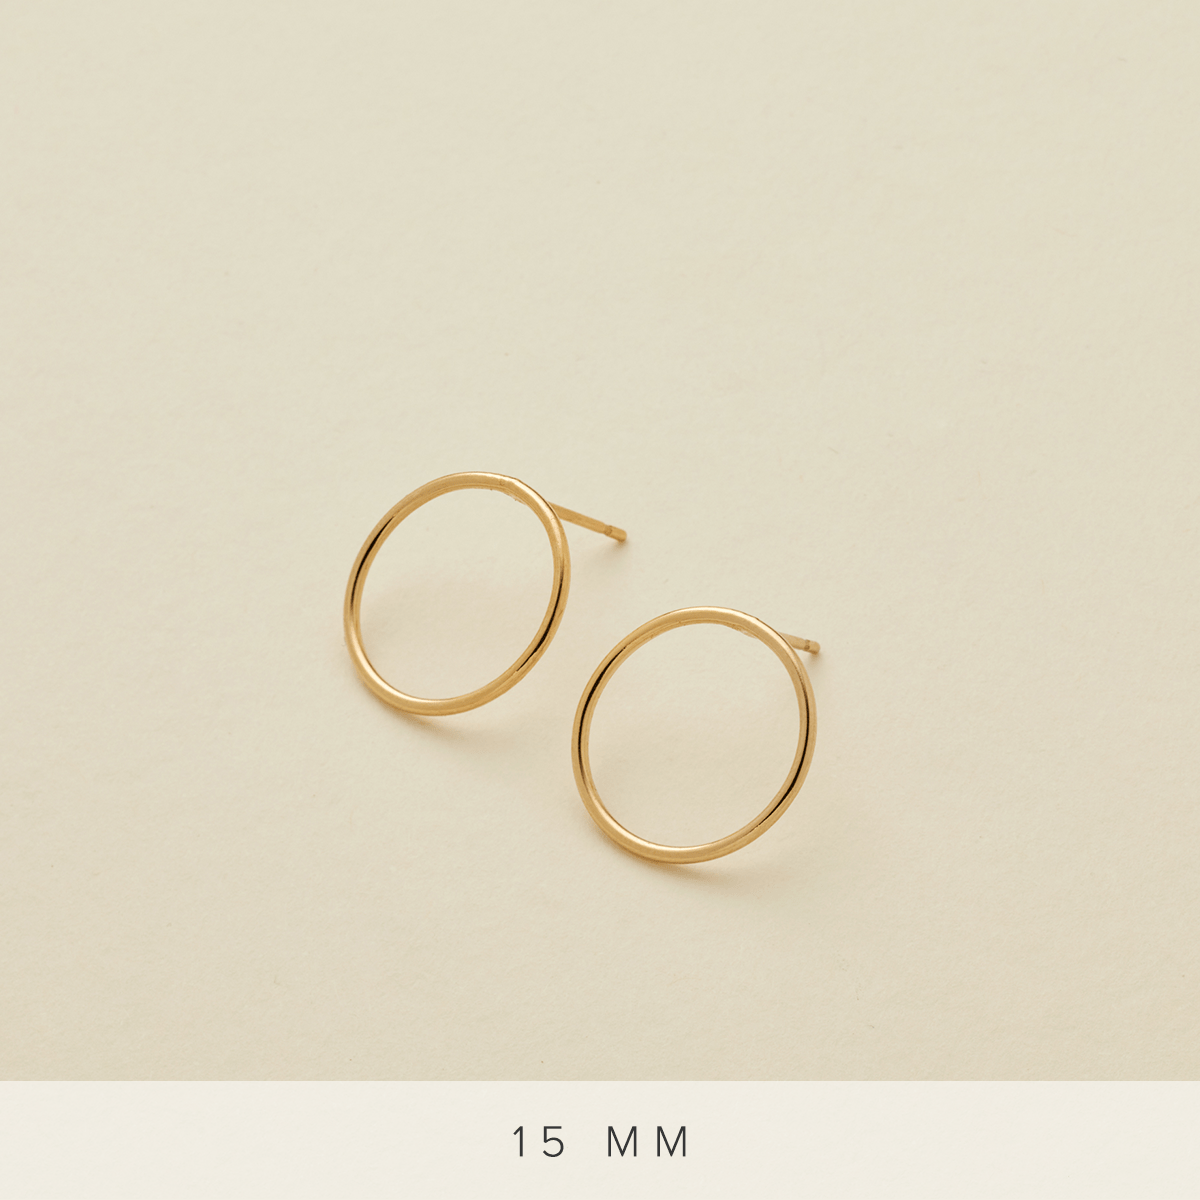 Circlet Earrings Gold Filled / 15mm Earring